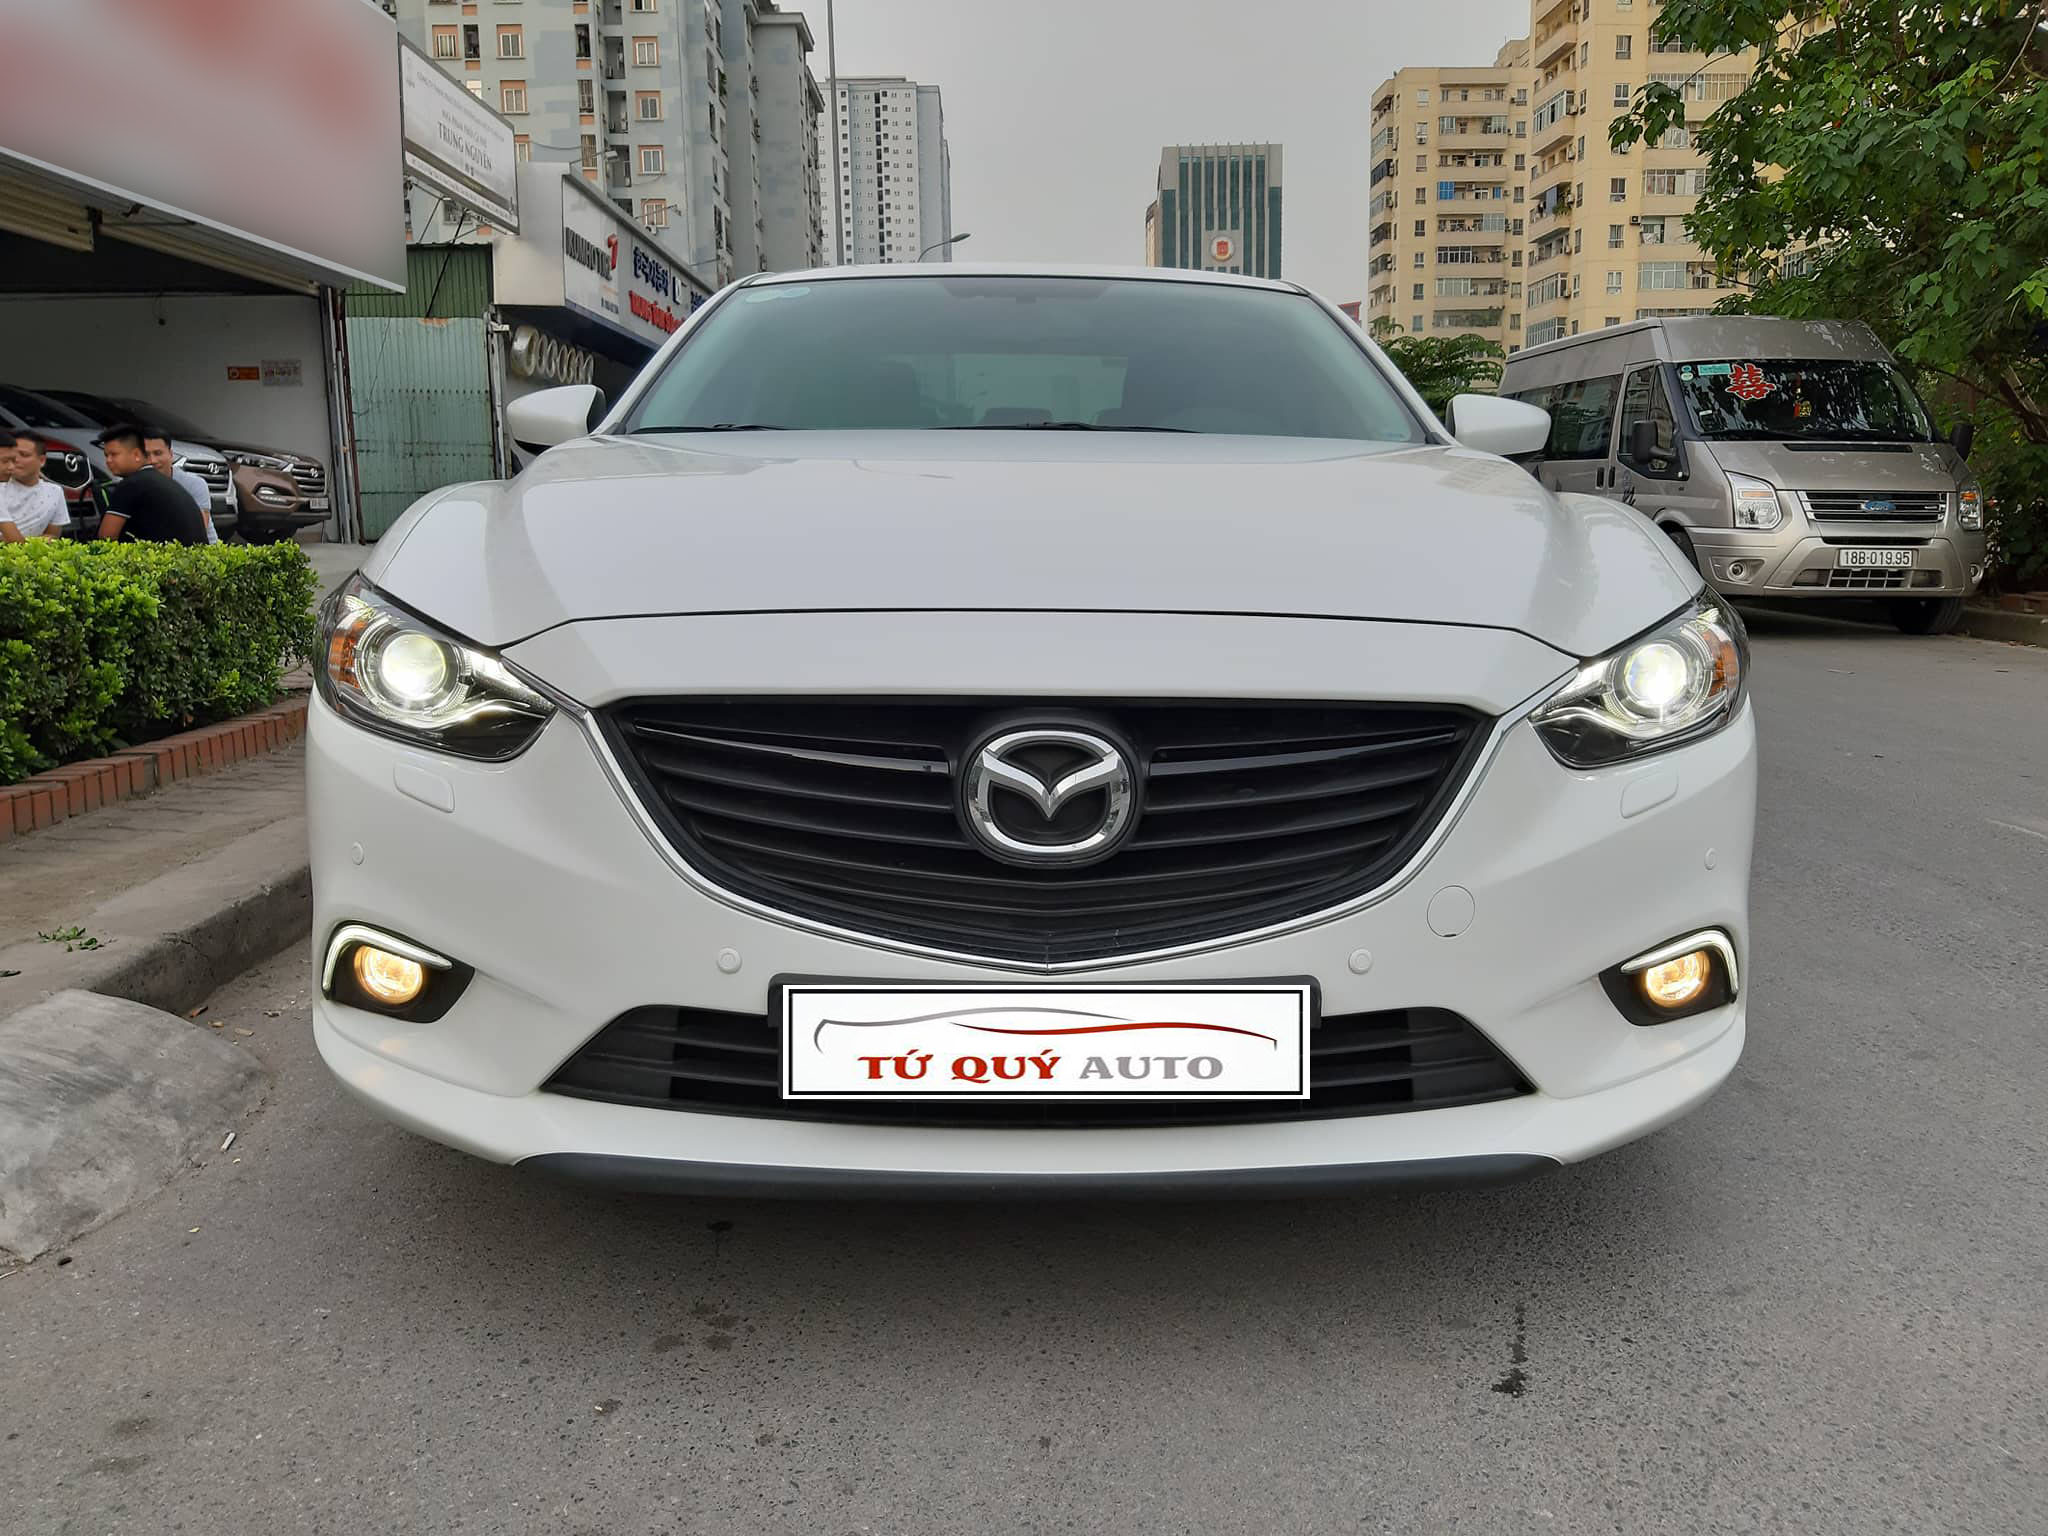 Chiếc Mazda 6 màu trắng tinh khôi này thực sự khiến bạn cảm thấy sang trọng và đẳng cấp. Hãy chiêm ngưỡng hình ảnh của nó và cảm nhận sự hoàn hảo của từng chi tiết trên xe.